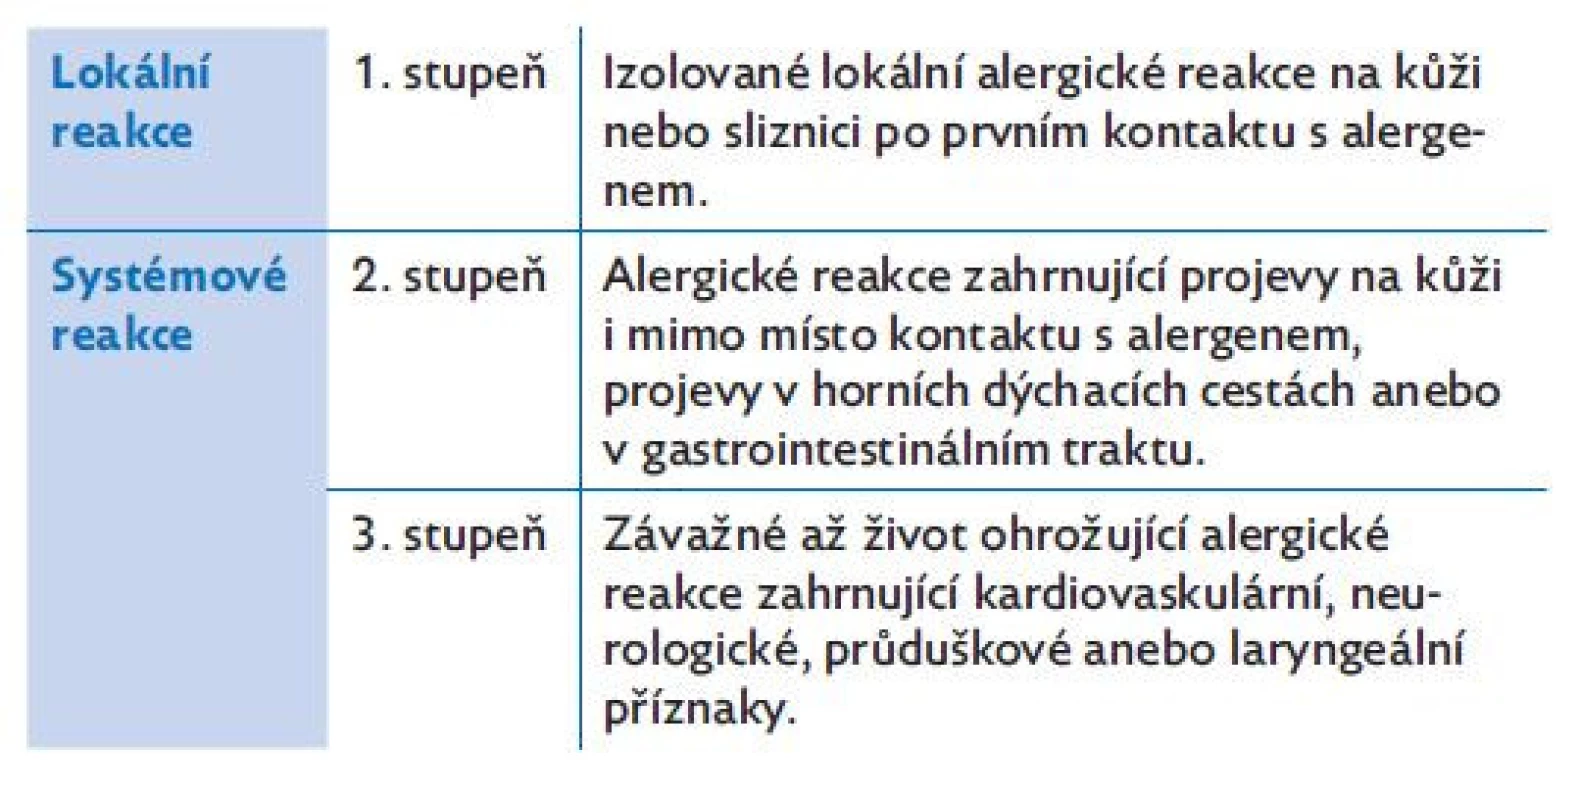 Zjednodušená klasifikace závažnosti akutních alergických
reakcí